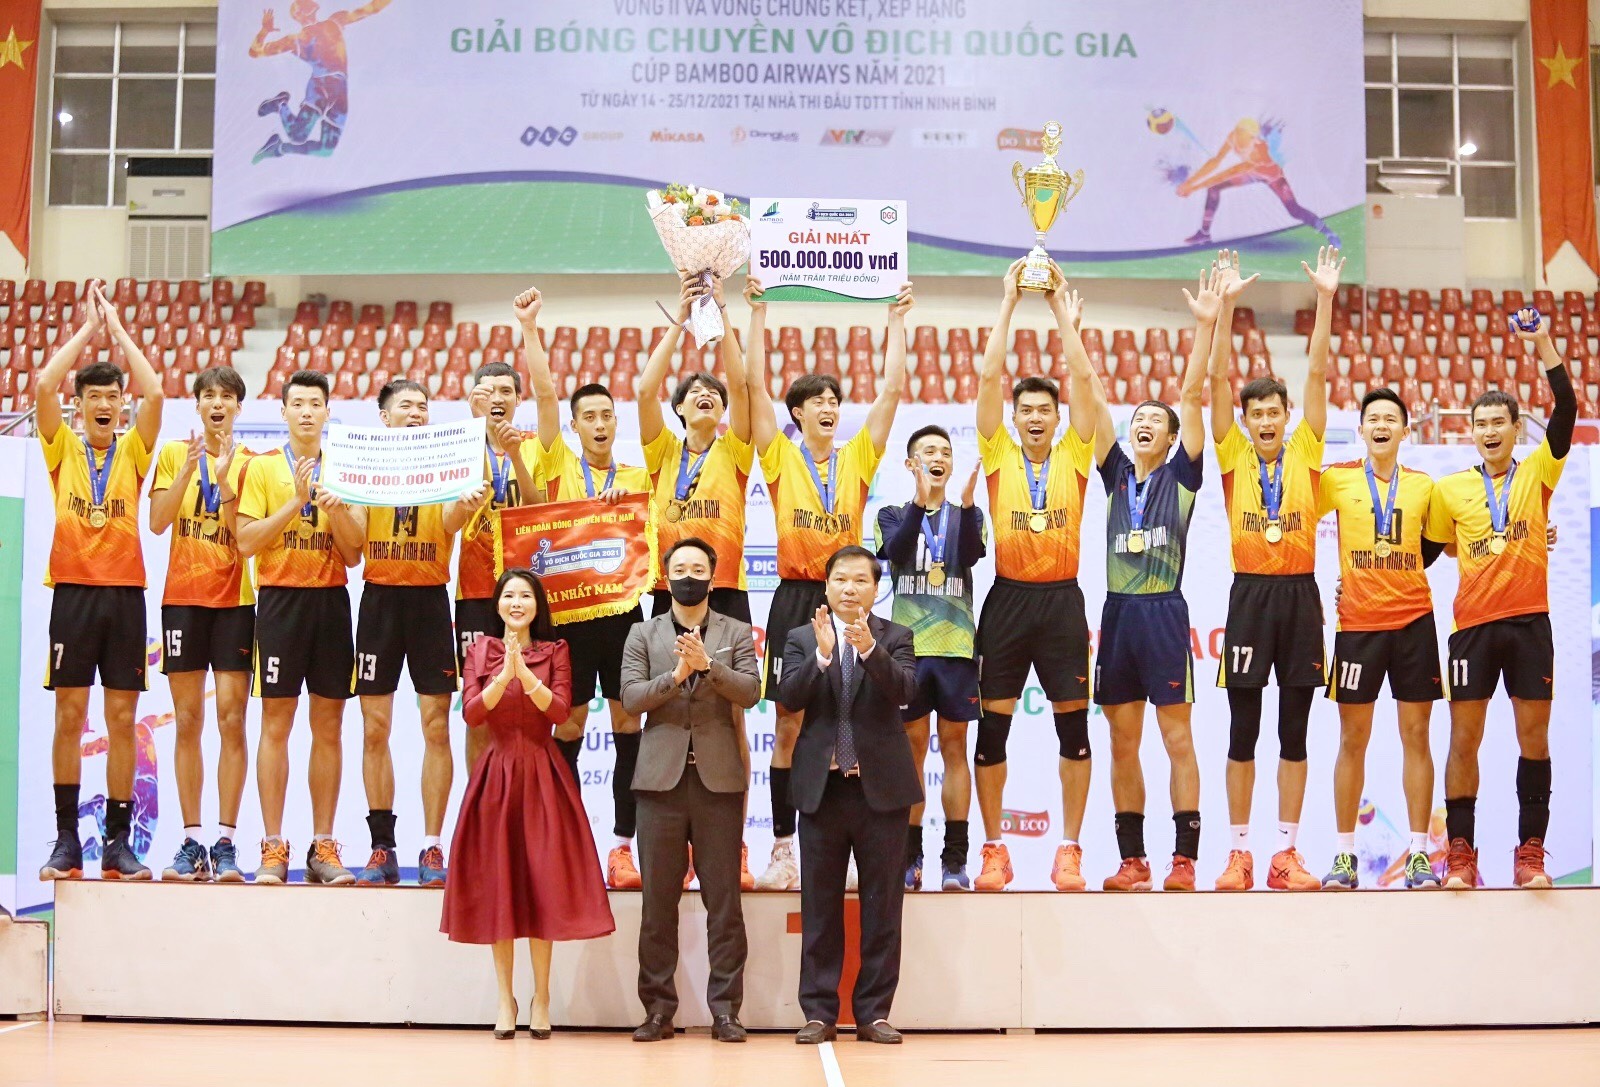 VCK Giải bóng chuyền Vô địch Quốc gia Cúp Bamboo Airways 2021: Thông tin - FLC và Tràng An Ninh Bình vô địch